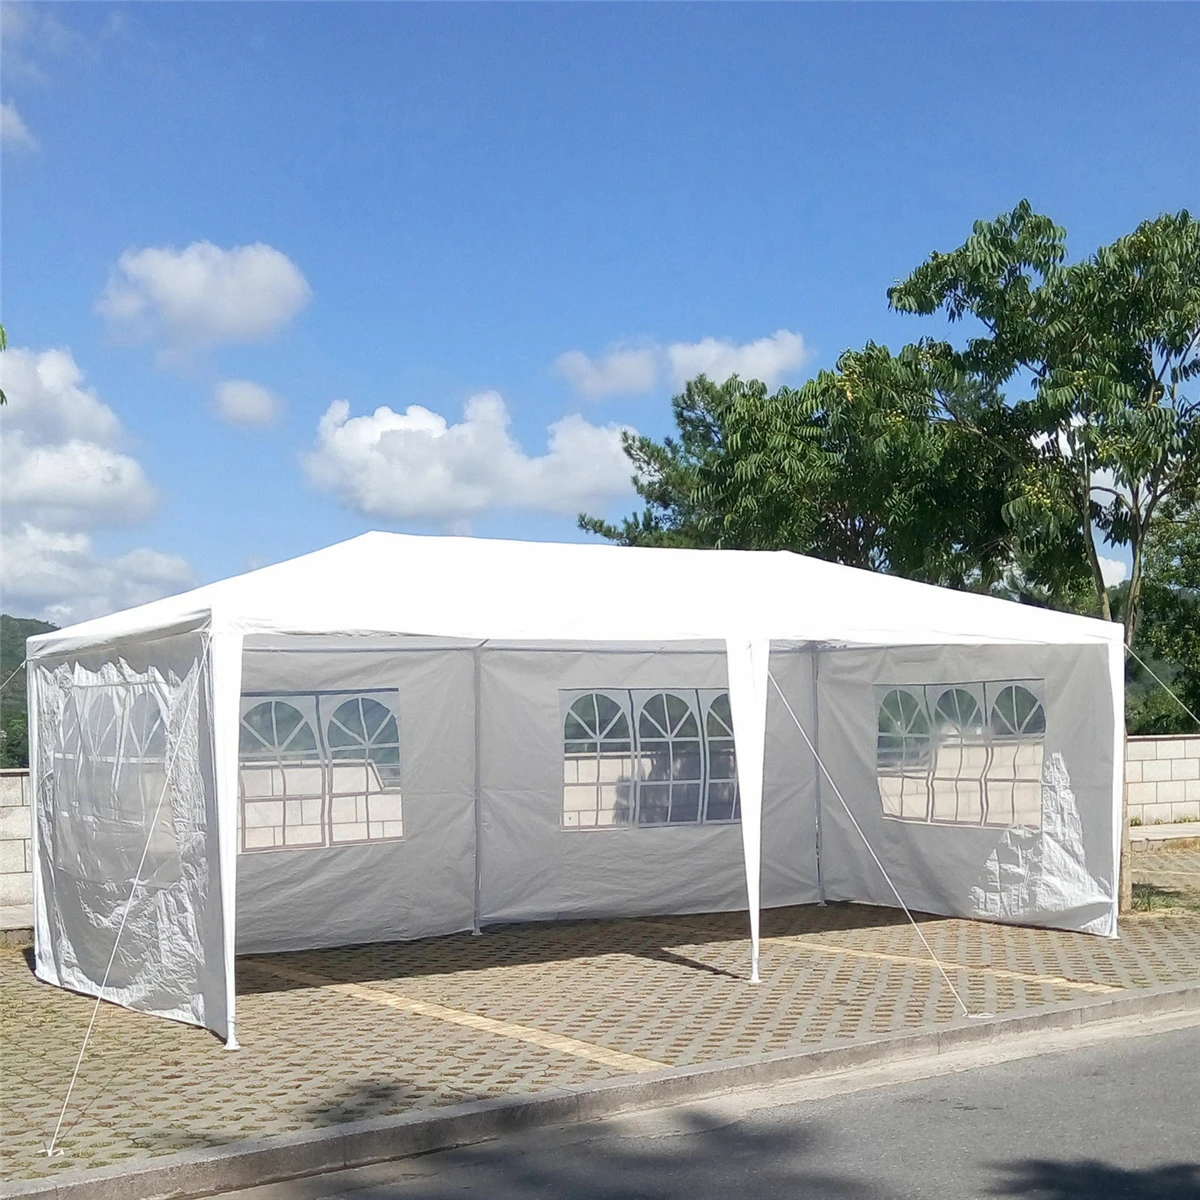 Ткань Оксфорд вечерние палатки стеновые стороны водонепроницаемый сад патио открытый навес 3x6 м солнце стены навес от солнца укрытие брезент боковины солнцезащитный козырек